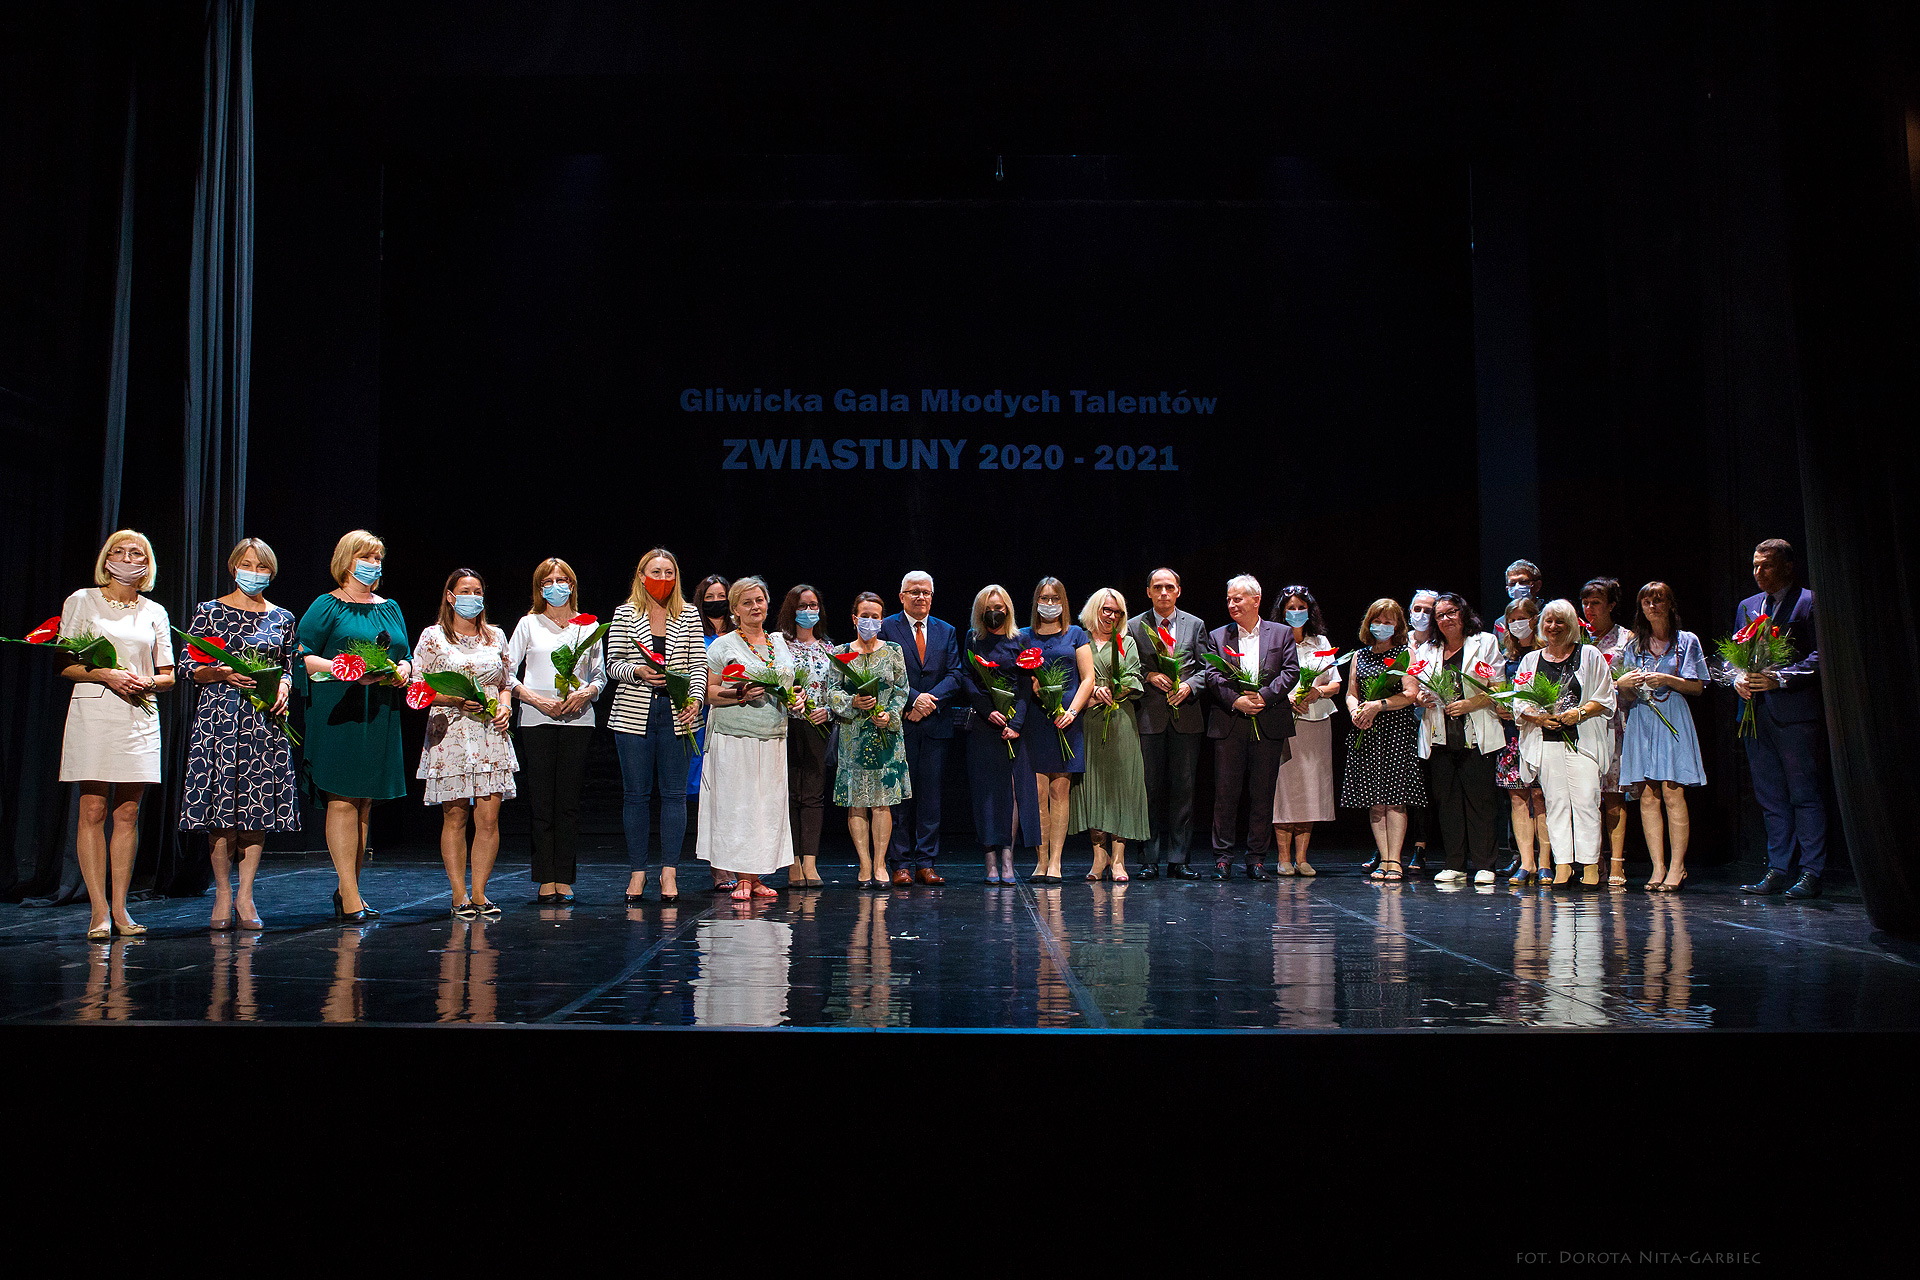 XV Gliwicka Gala Młodych Talentów Zwiastuny 2021 foto: Dorota Nita-Garbiec